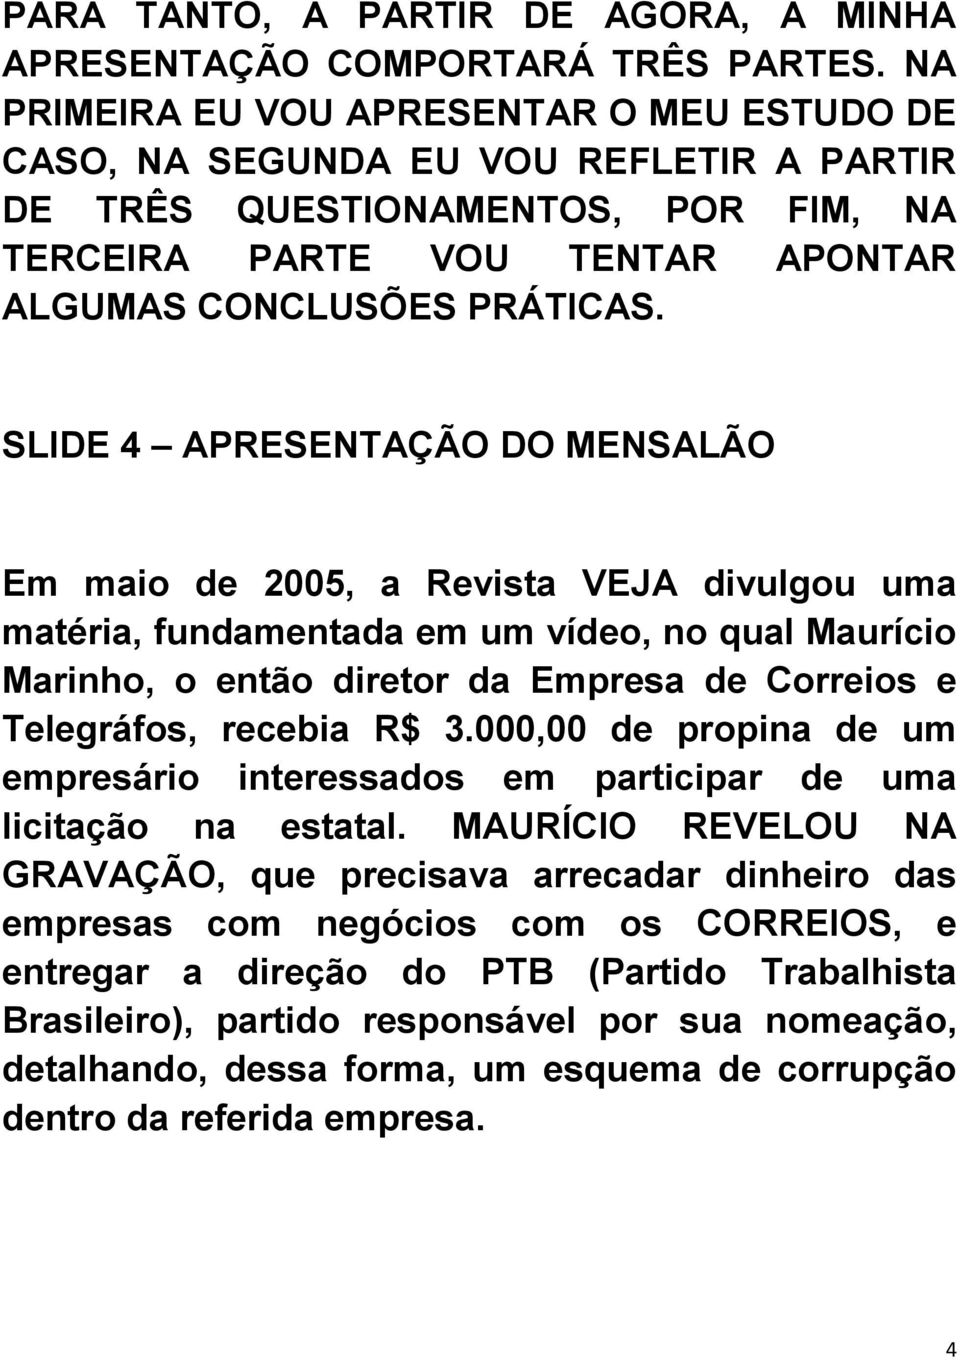 SLIDE 4 APRESENTAÇÃO DO MENSALÃO Em maio de 2005, a Revista VEJA divulgou uma matéria, fundamentada em um vídeo, no qual Maurício Marinho, o então diretor da Empresa de Correios e Telegráfos, recebia